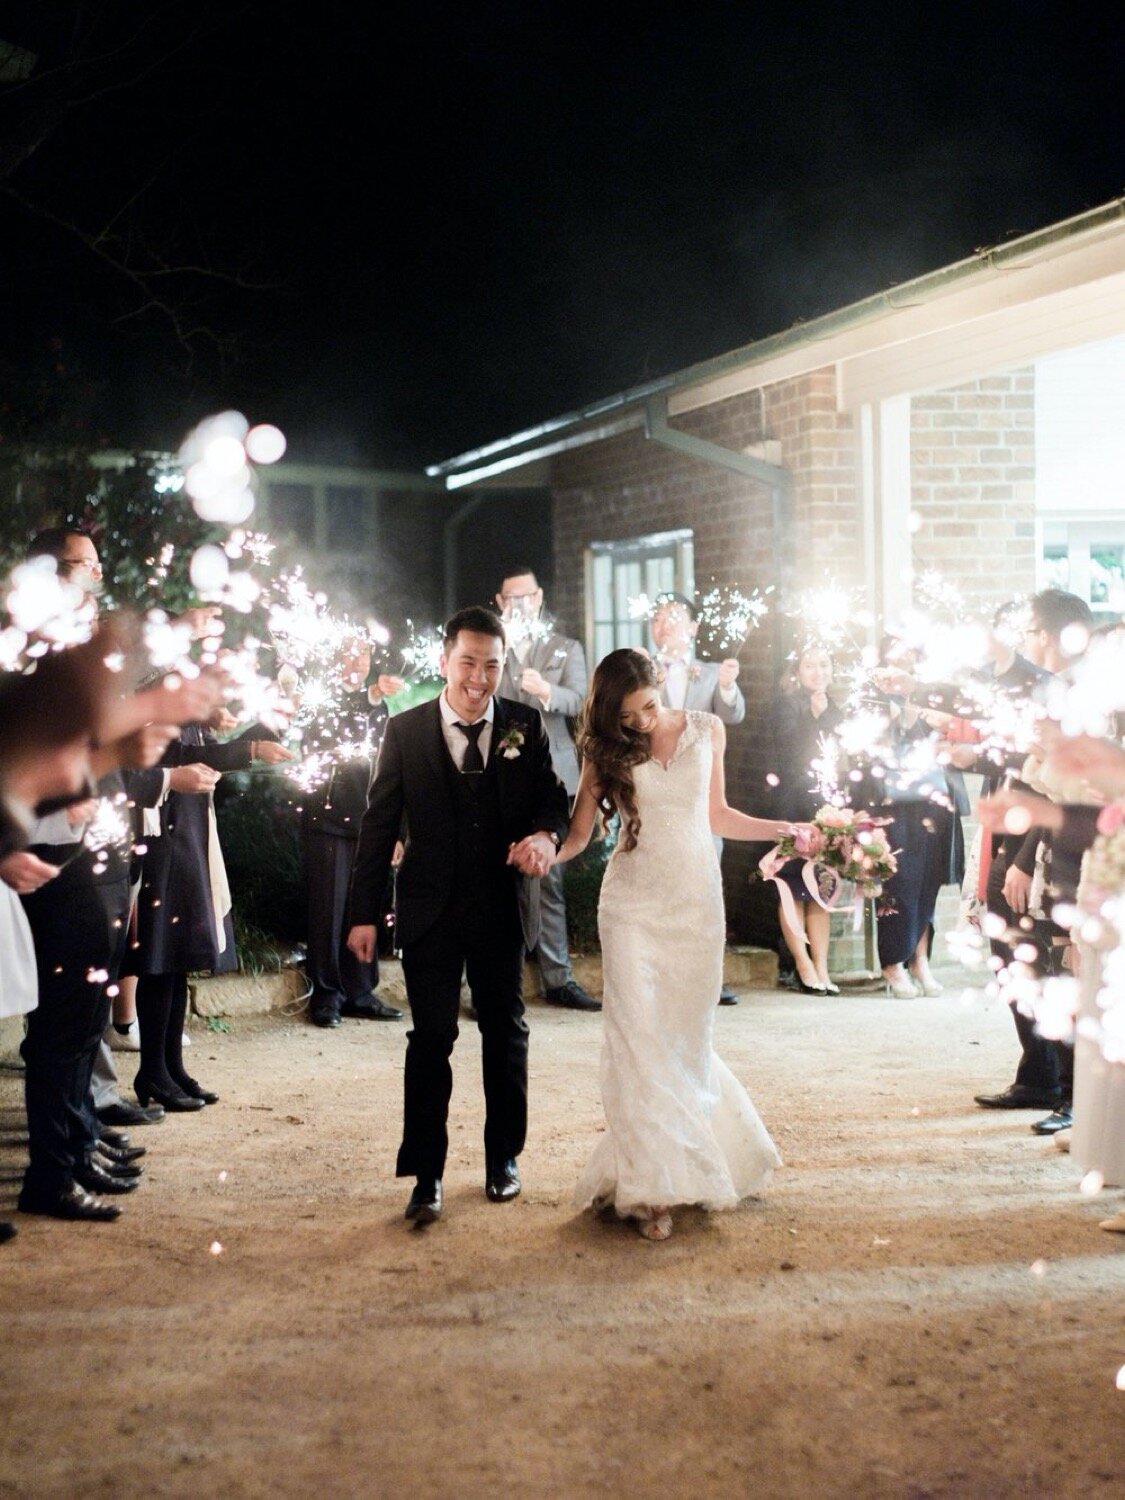 sparklers for wedding reception ending